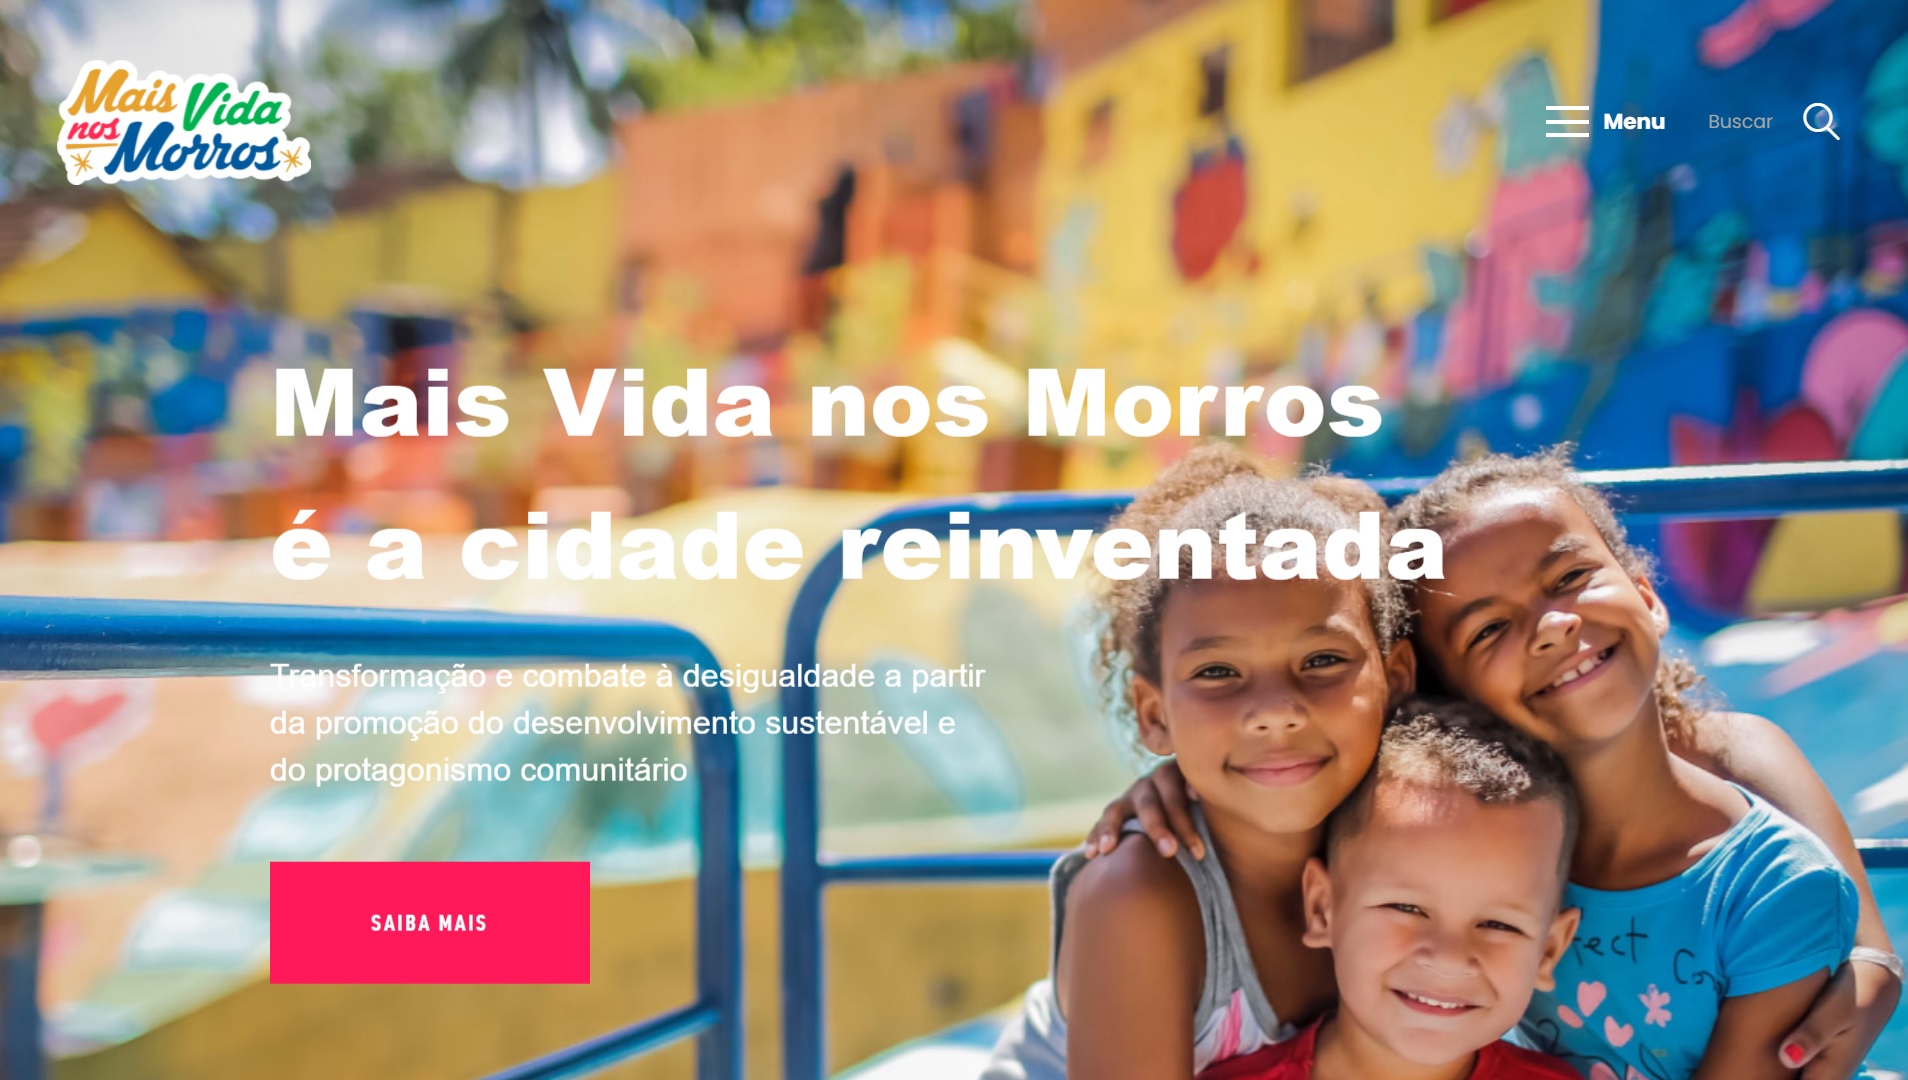 Mais Vida nos Morros - reprodução da home page do site